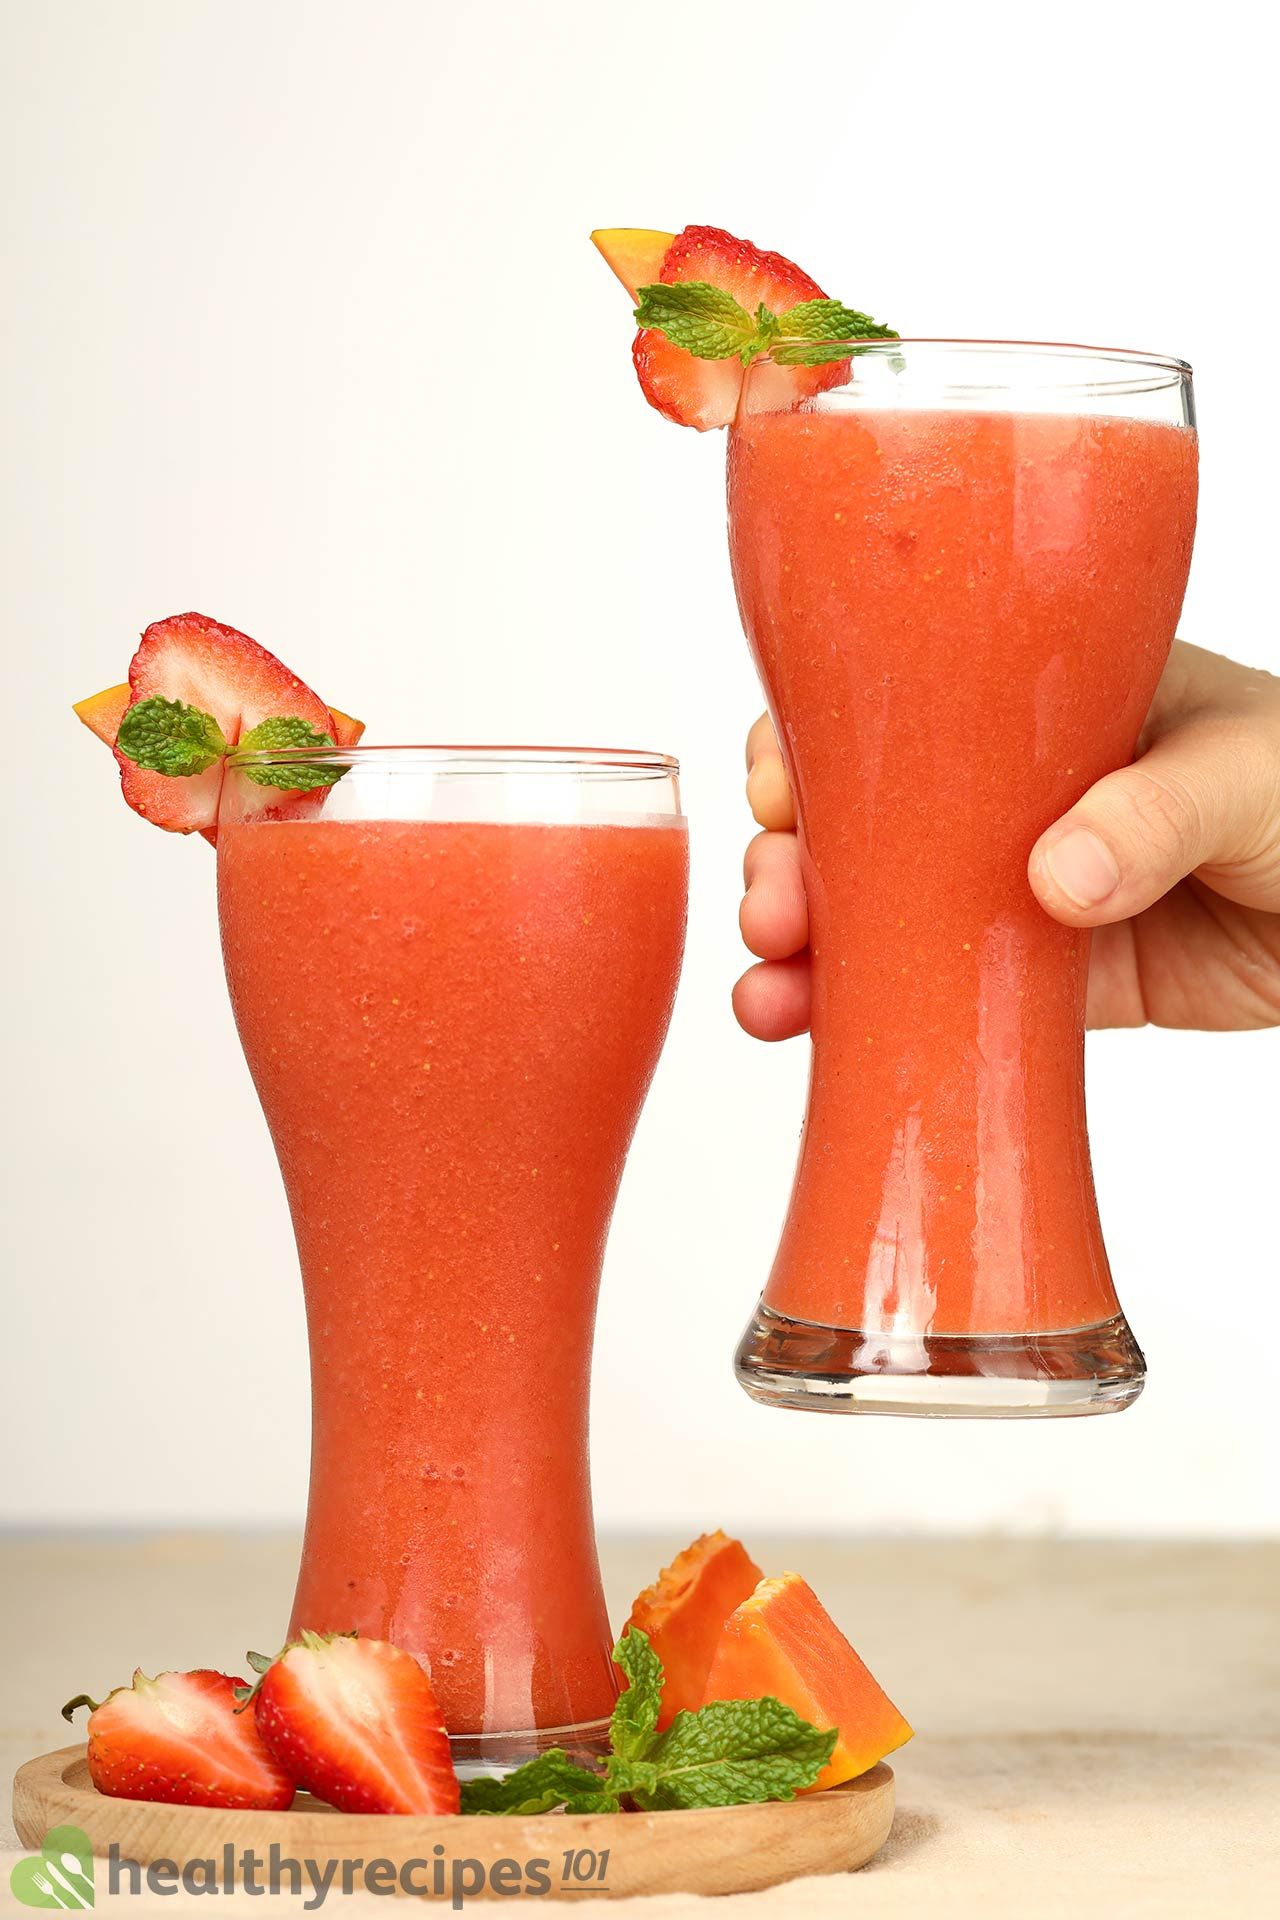 Homemade Strawberry Papaya Smoothie Recipe